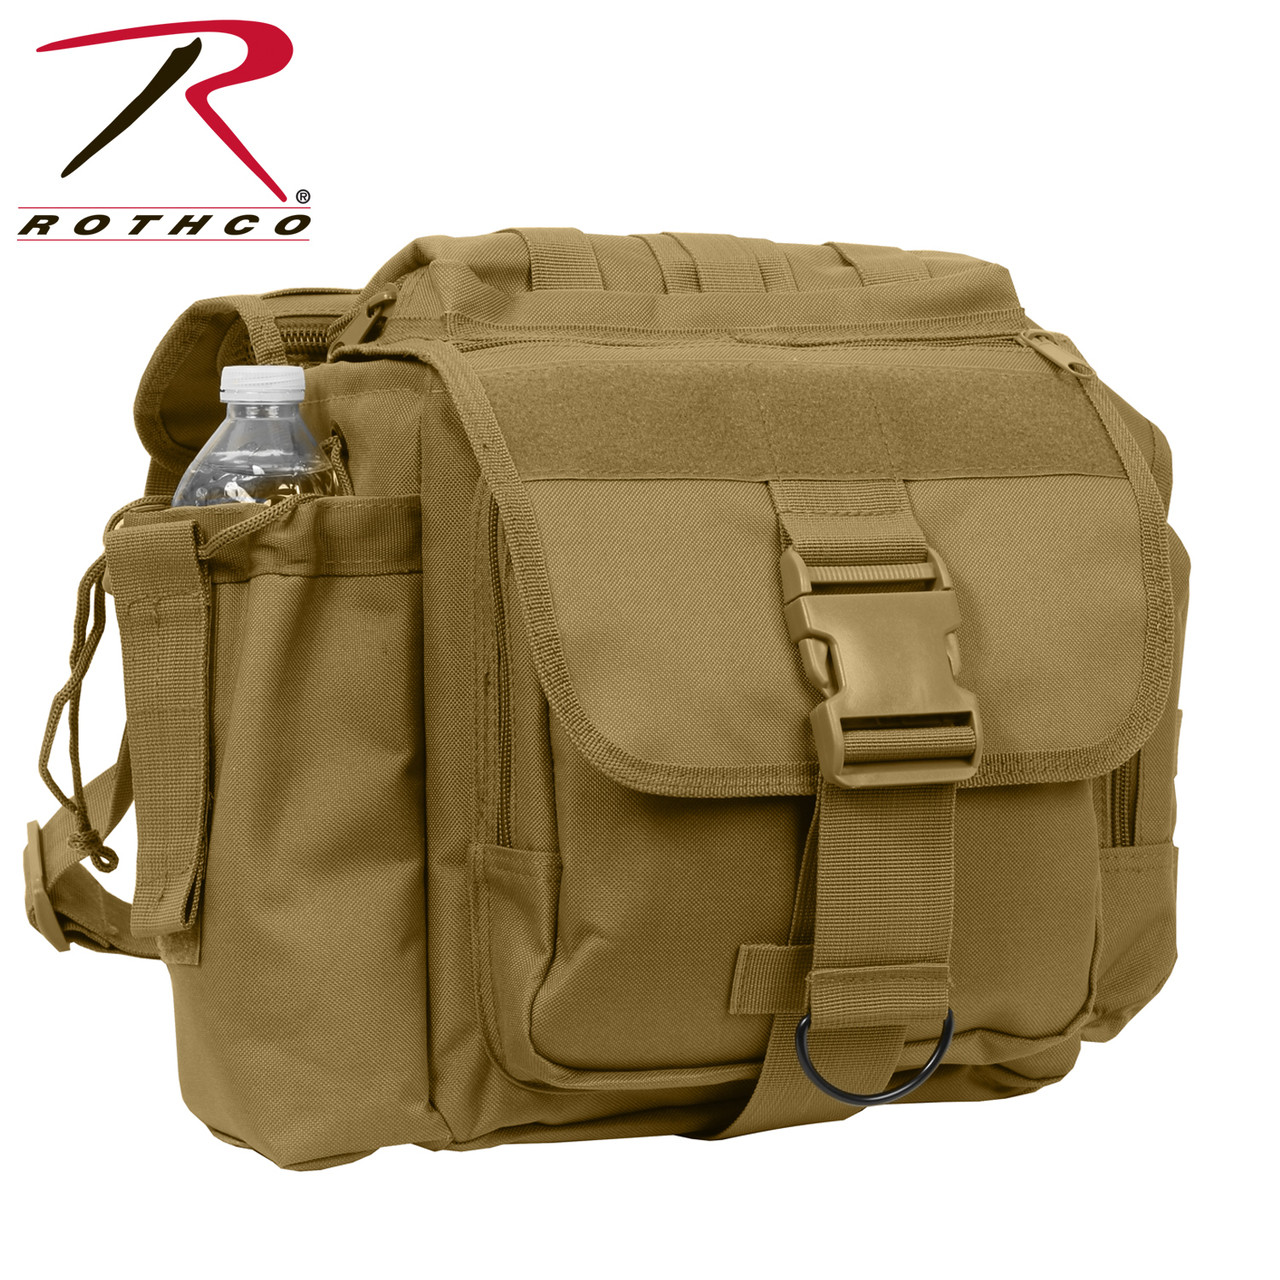 Shop Coyote Advanced XL Tactical Shoulder Bags - Fatigues Army Navy